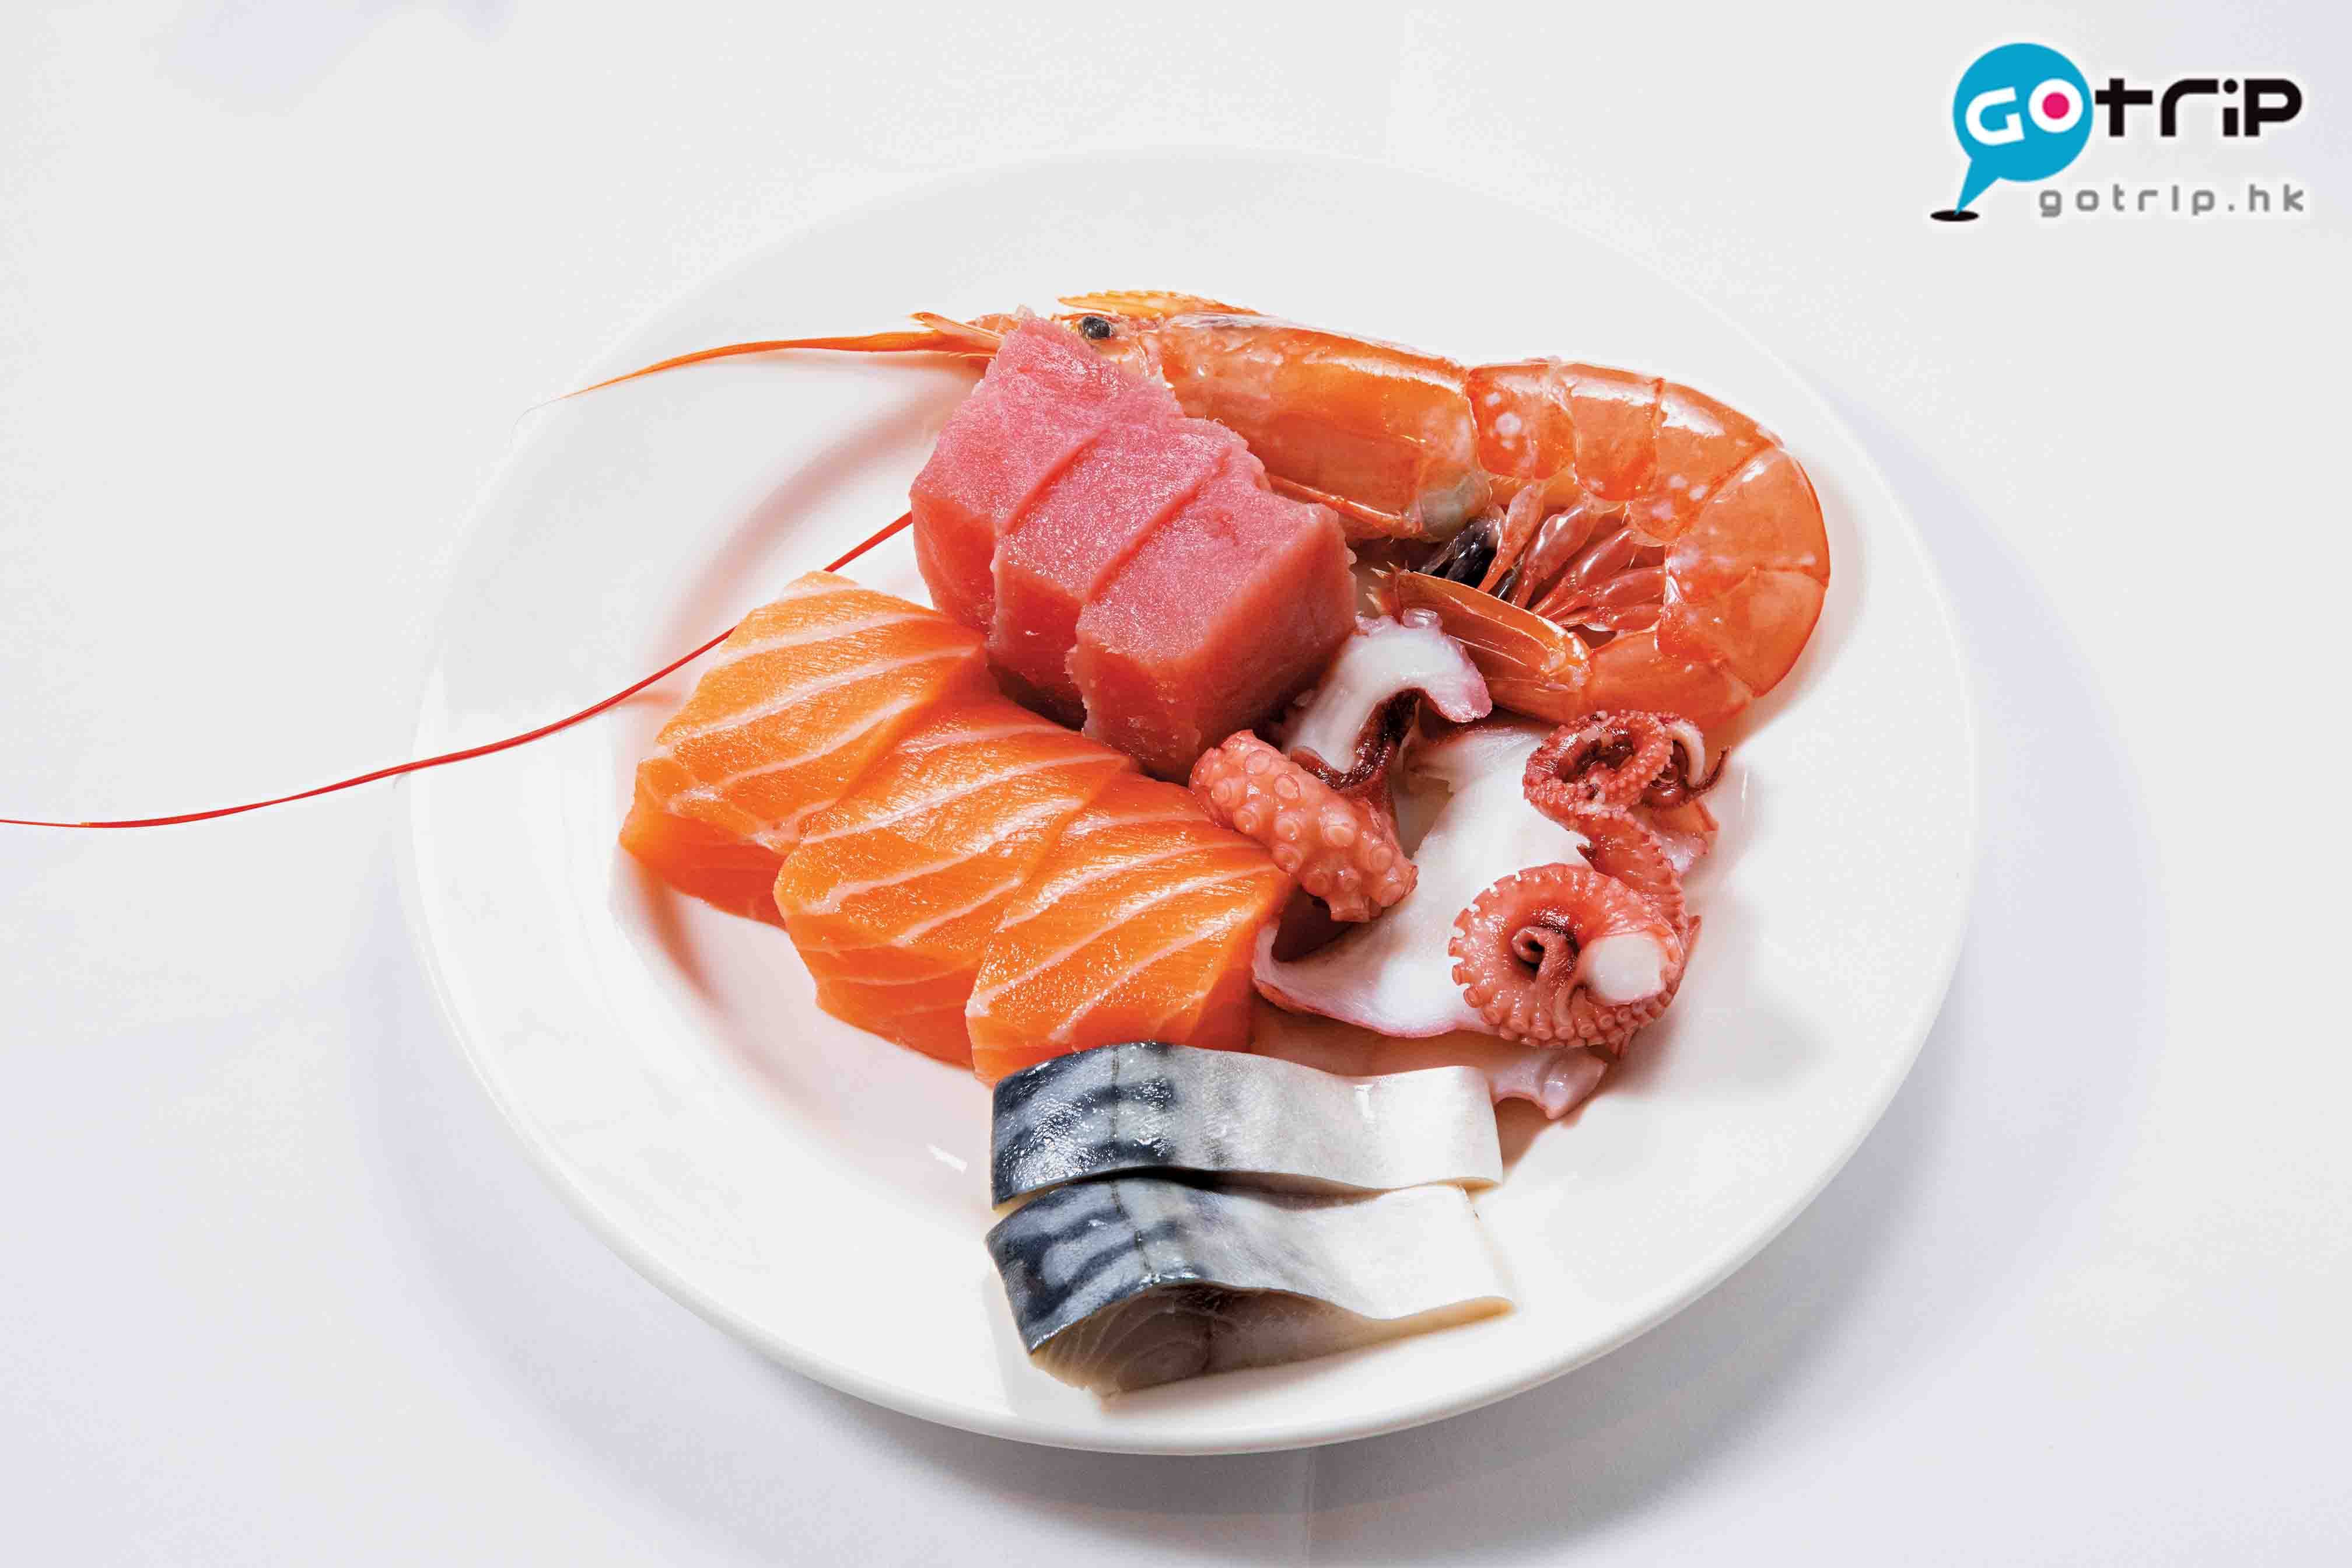 澳門自助餐2019 刺身有挪威三文魚、吞拿魚、青花魚、八爪魚和阿根廷紅蝦。